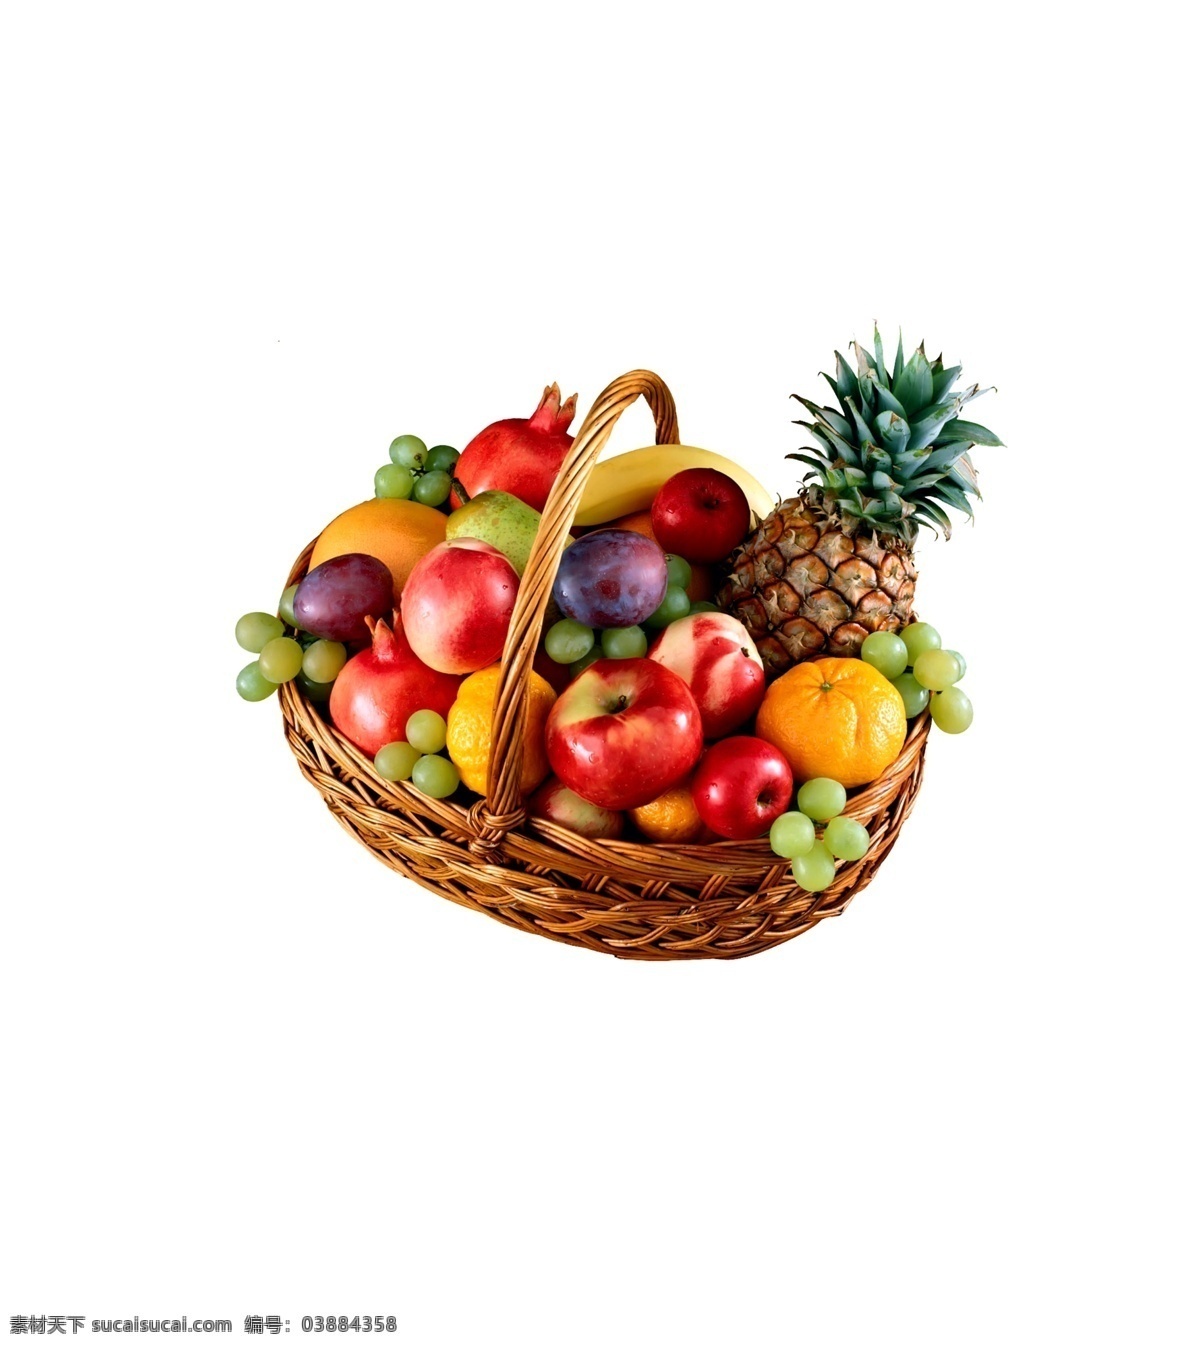 水果篮子元素 果盘 篮子 葡萄 菠萝 苹果 水果 拼盘 水果元素